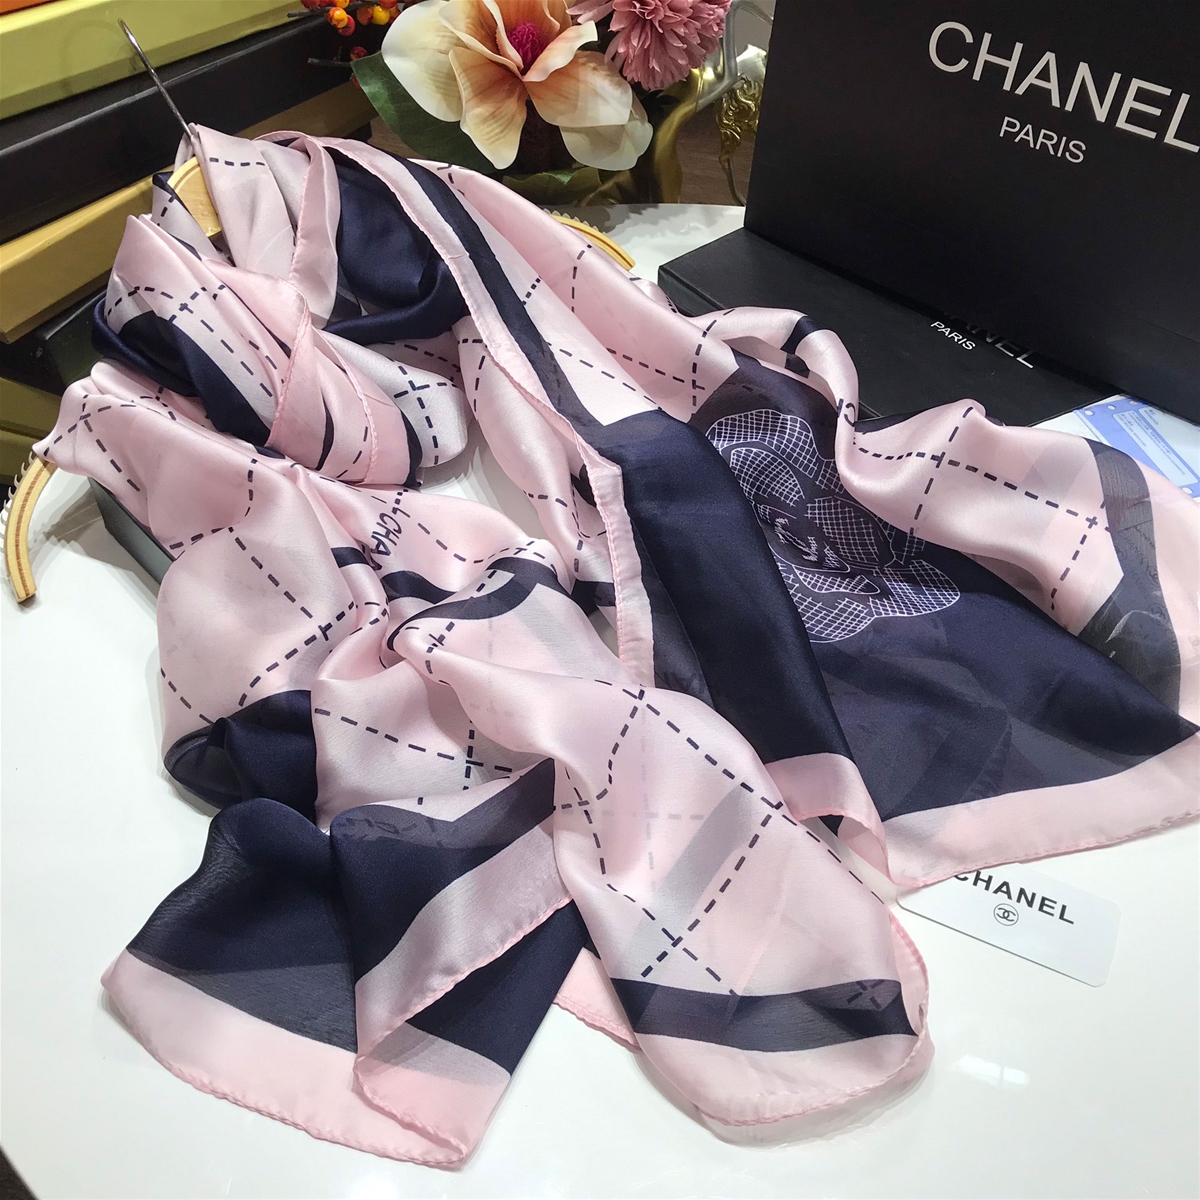 Khăn Chanel phối màu sắc xanh hồng cao cấp